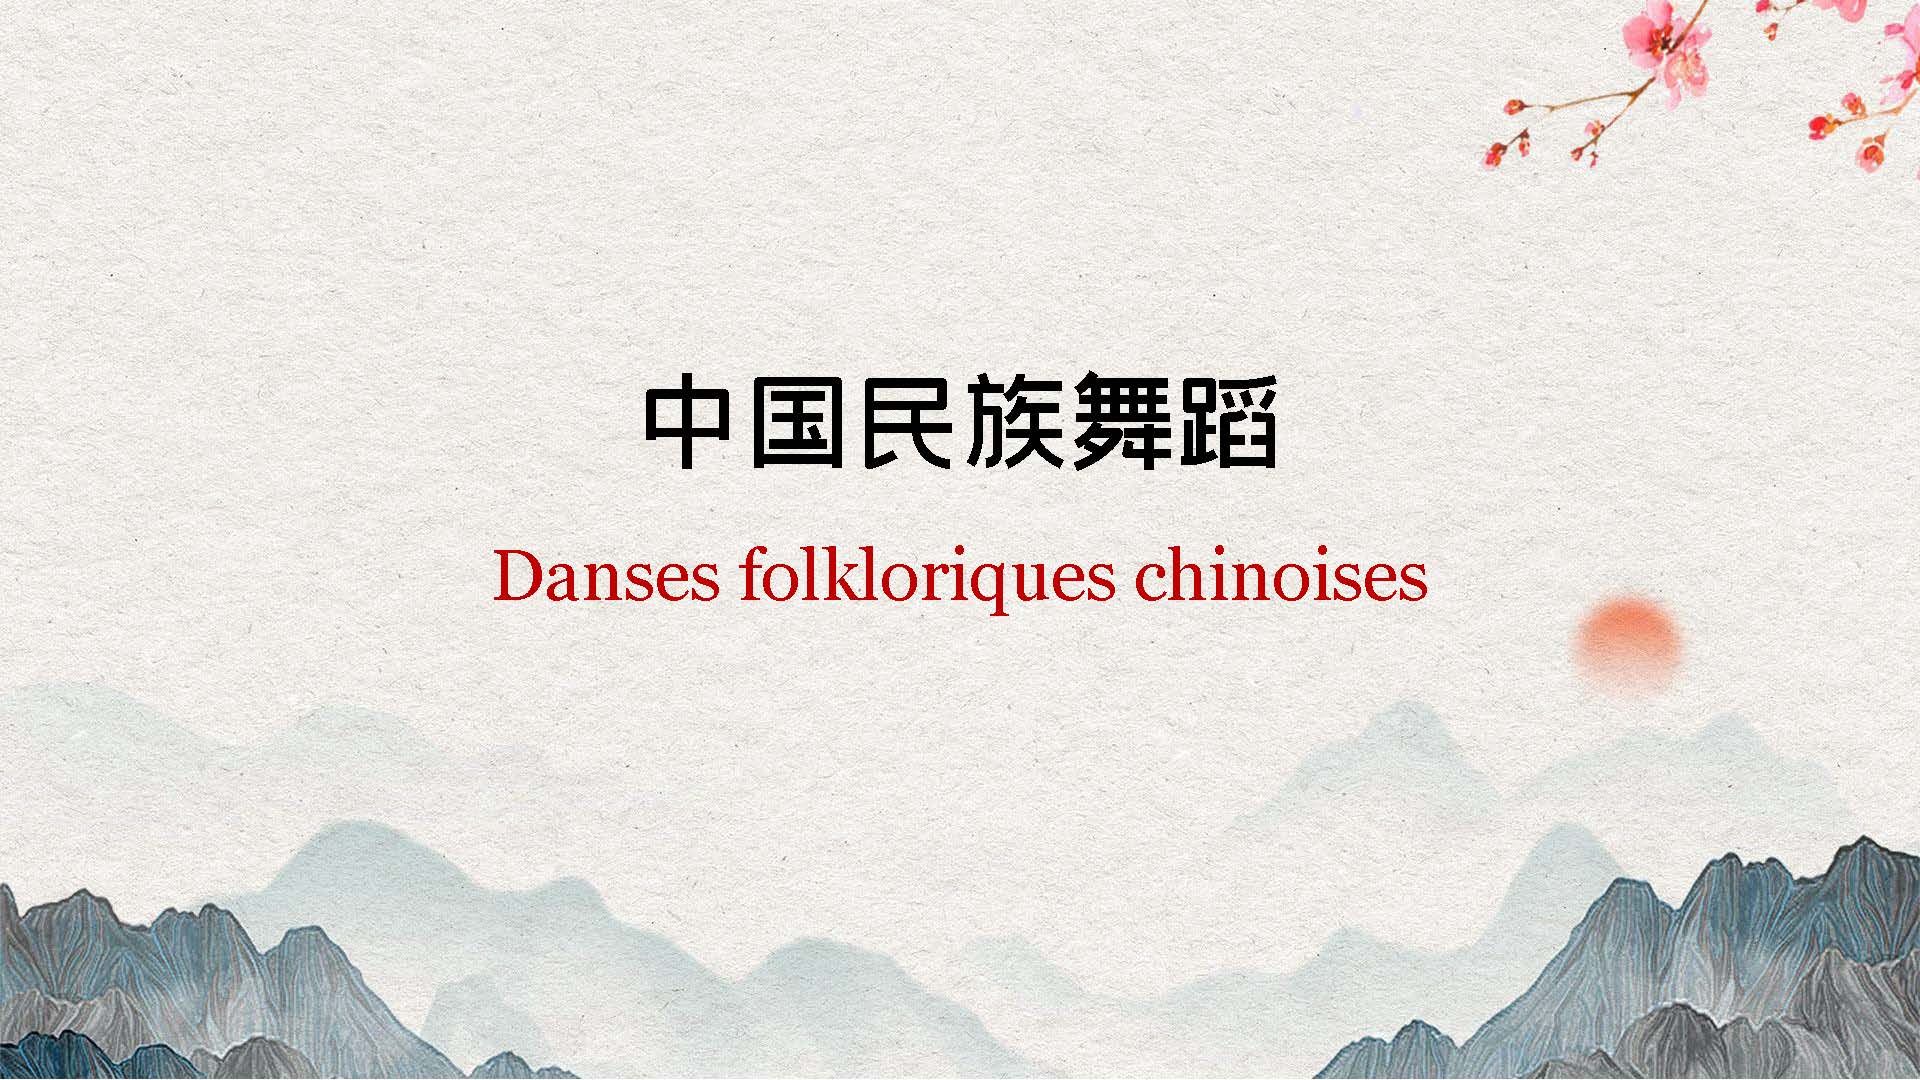 Danses folkloriques chinoises